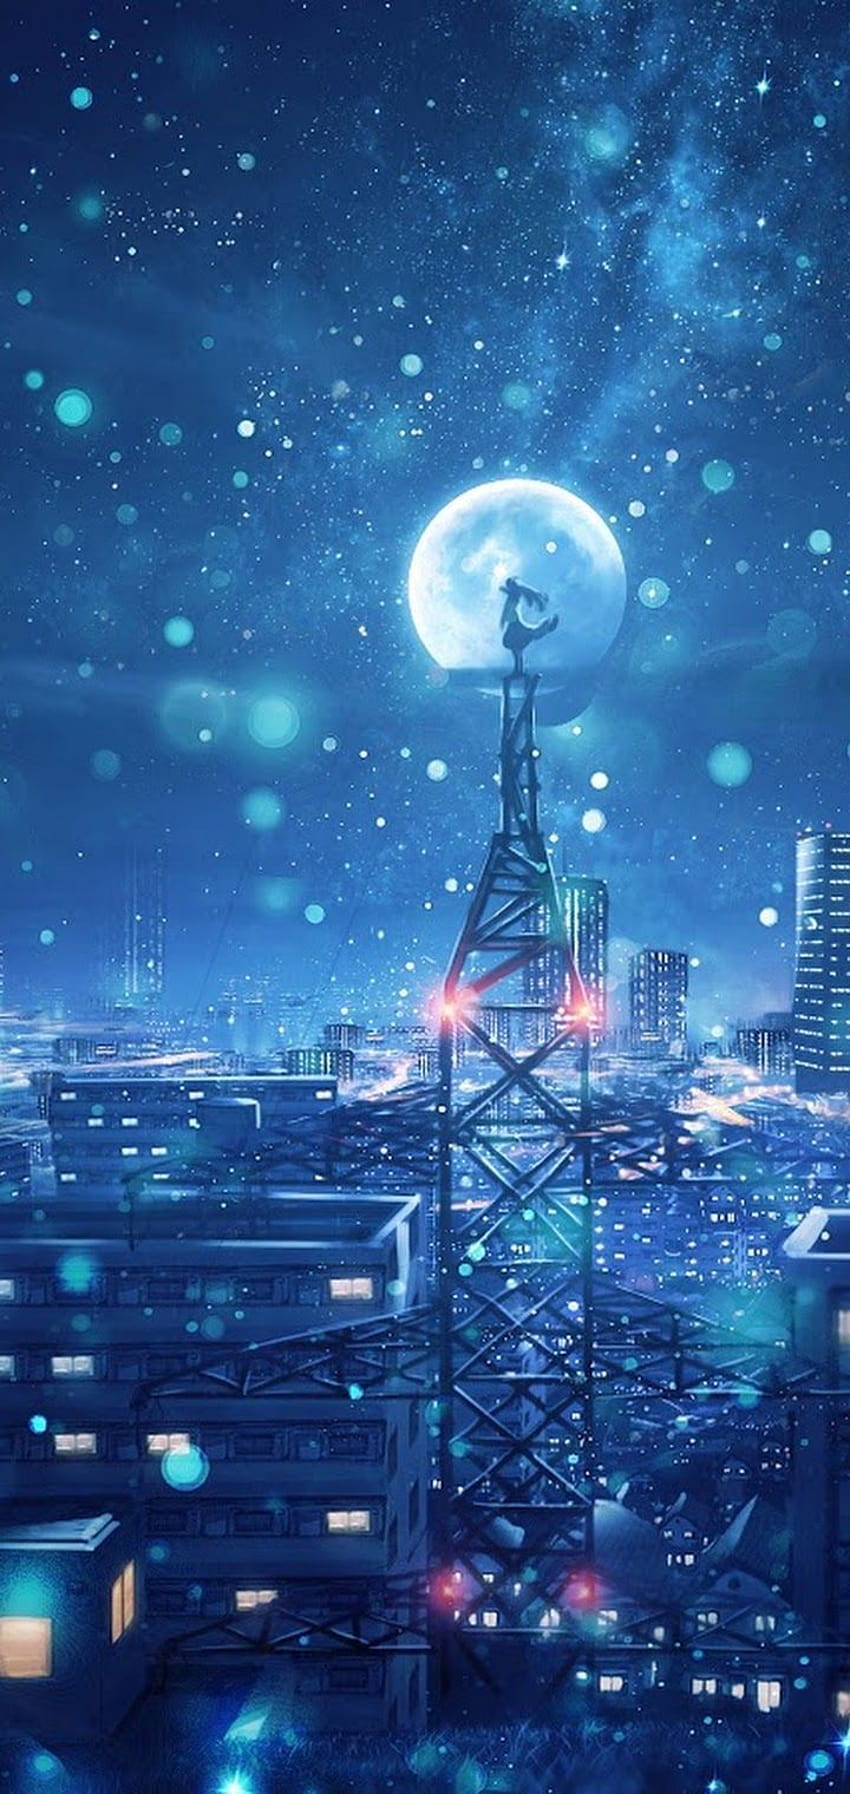 Cùng khám phá thế giới đêm đầy màu sắc và lãng mạn trong loạt hình ảnh anime đẹp lung linh trên Oppo A3s. Đừng bỏ lỡ cơ hội để trải nghiệm những khoảnh khắc tuyệt vời này.